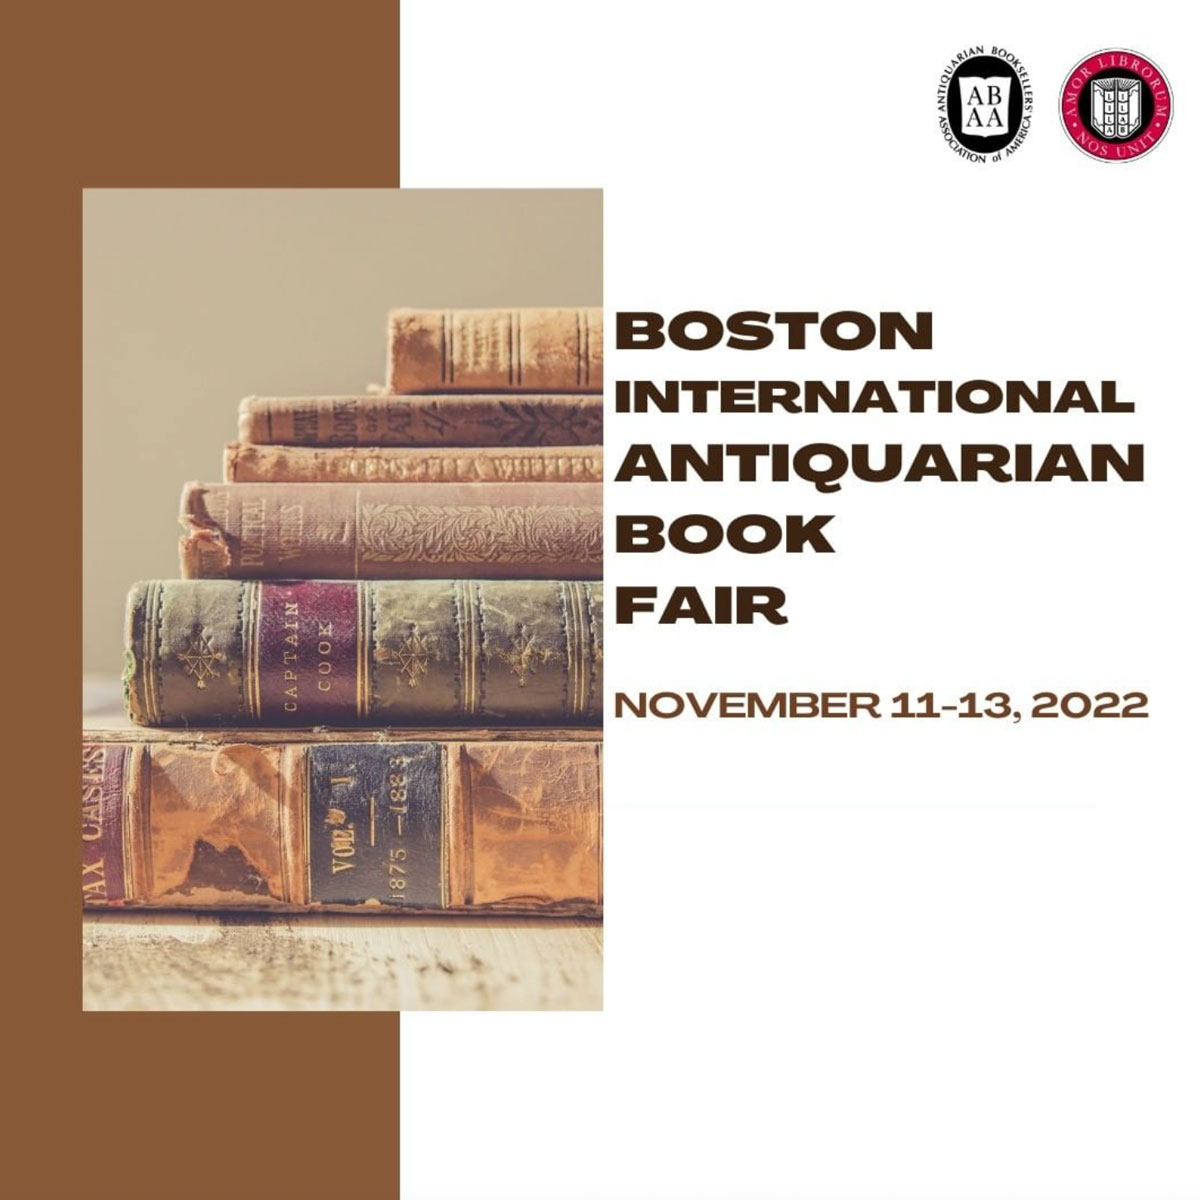 Boston Book Fair 2022